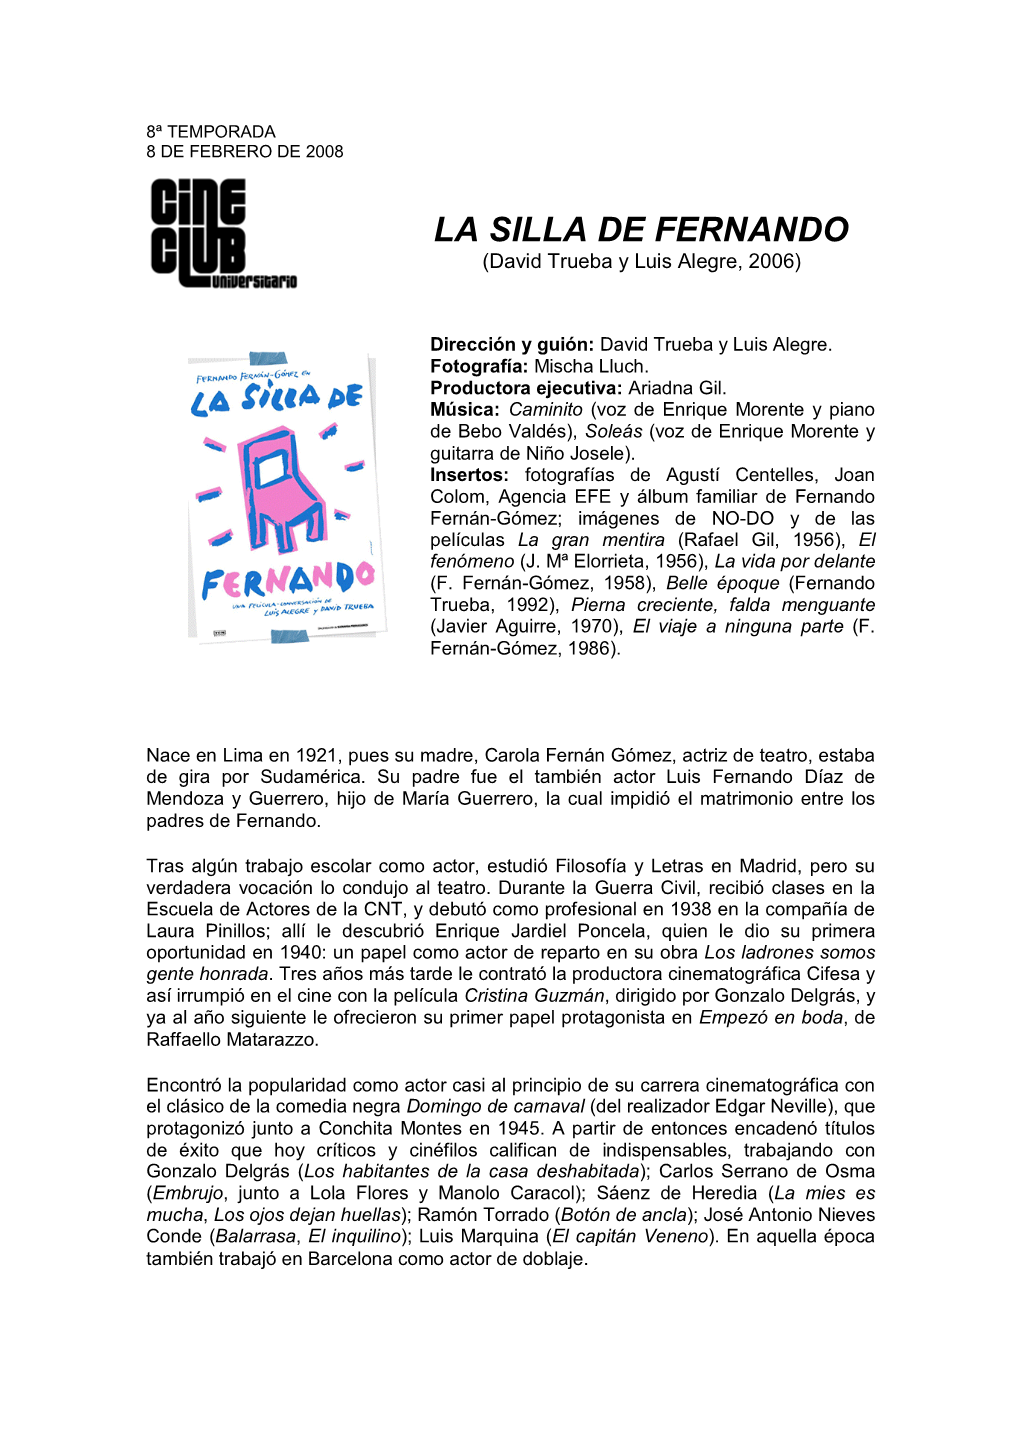 LA SILLA DE FERNANDO (David Trueba Y Luis Alegre, 2006)